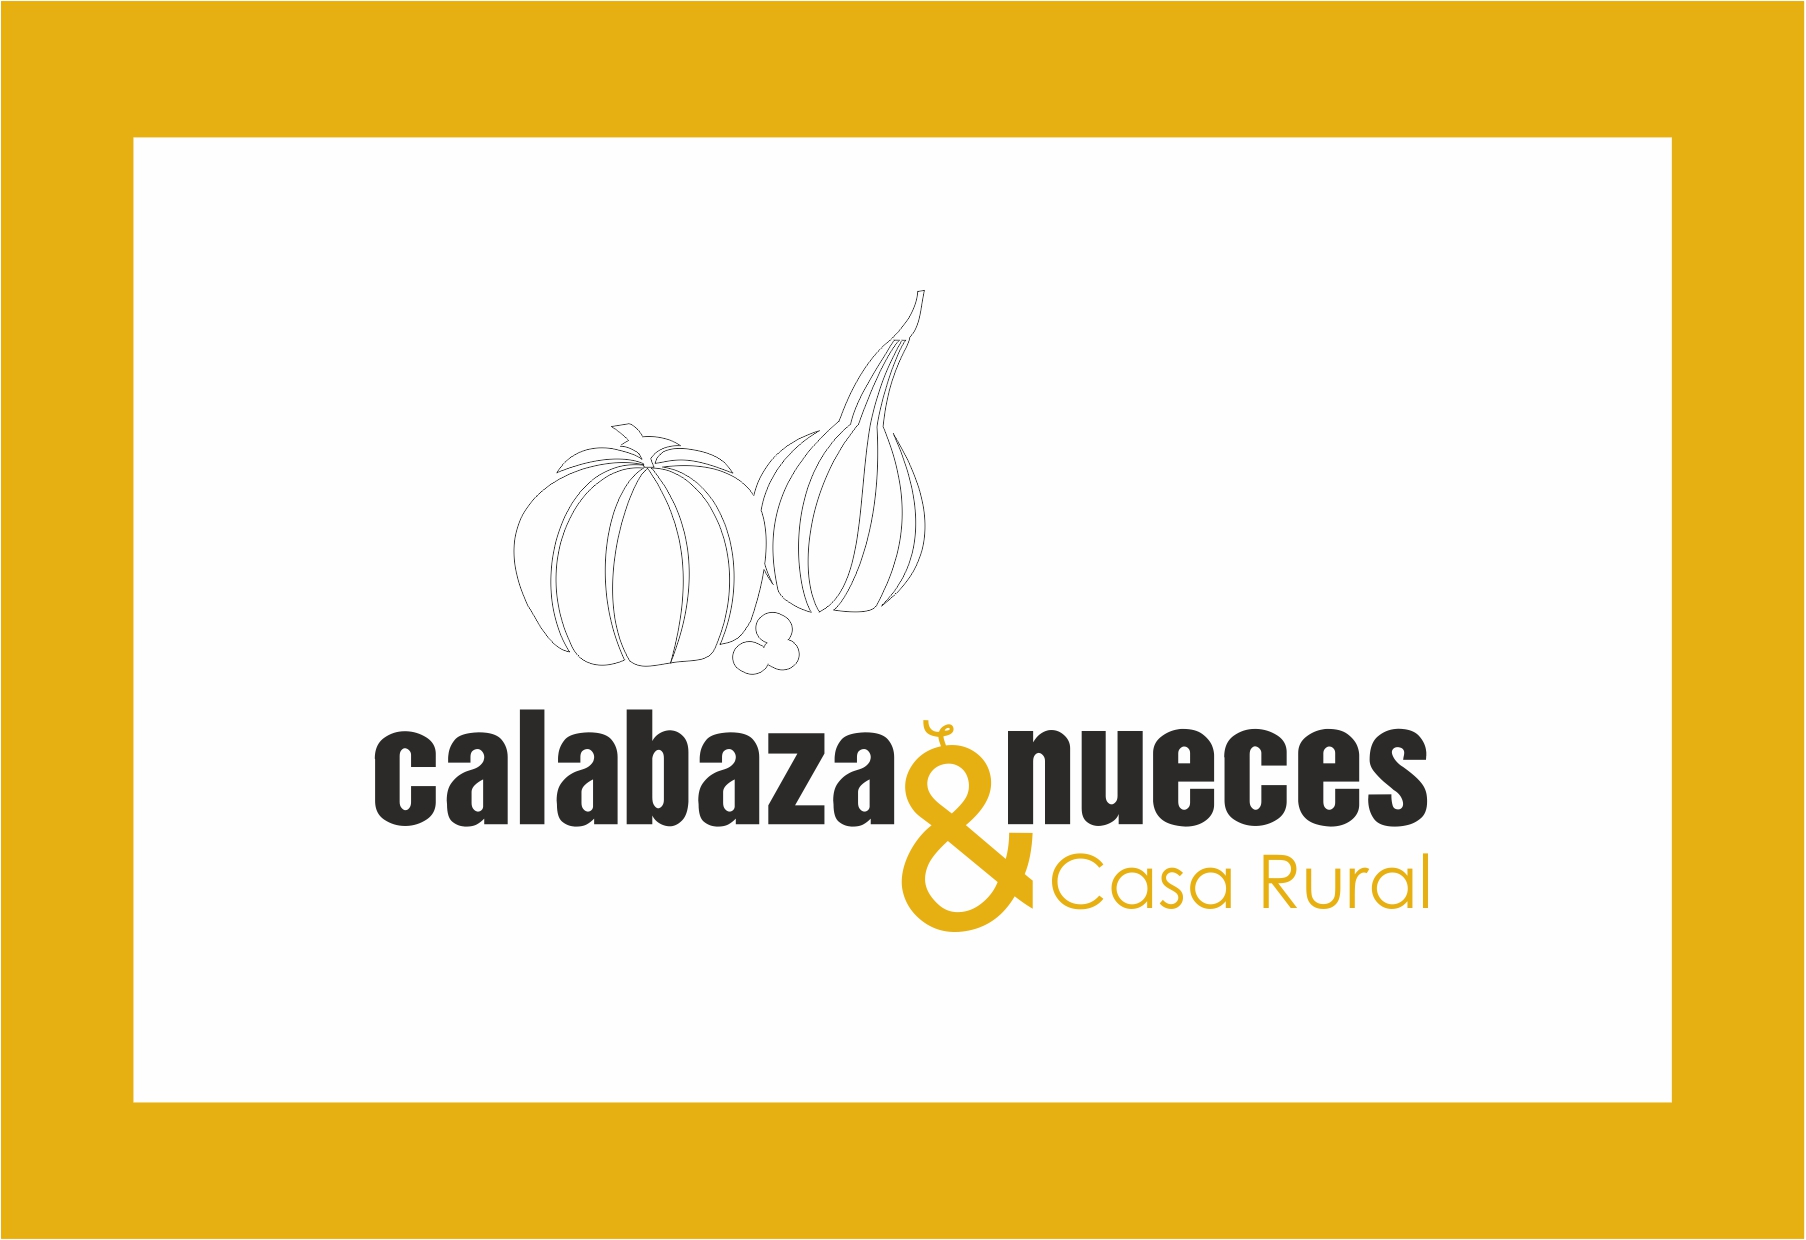 Calabaza&nueces en la Guide du Routard